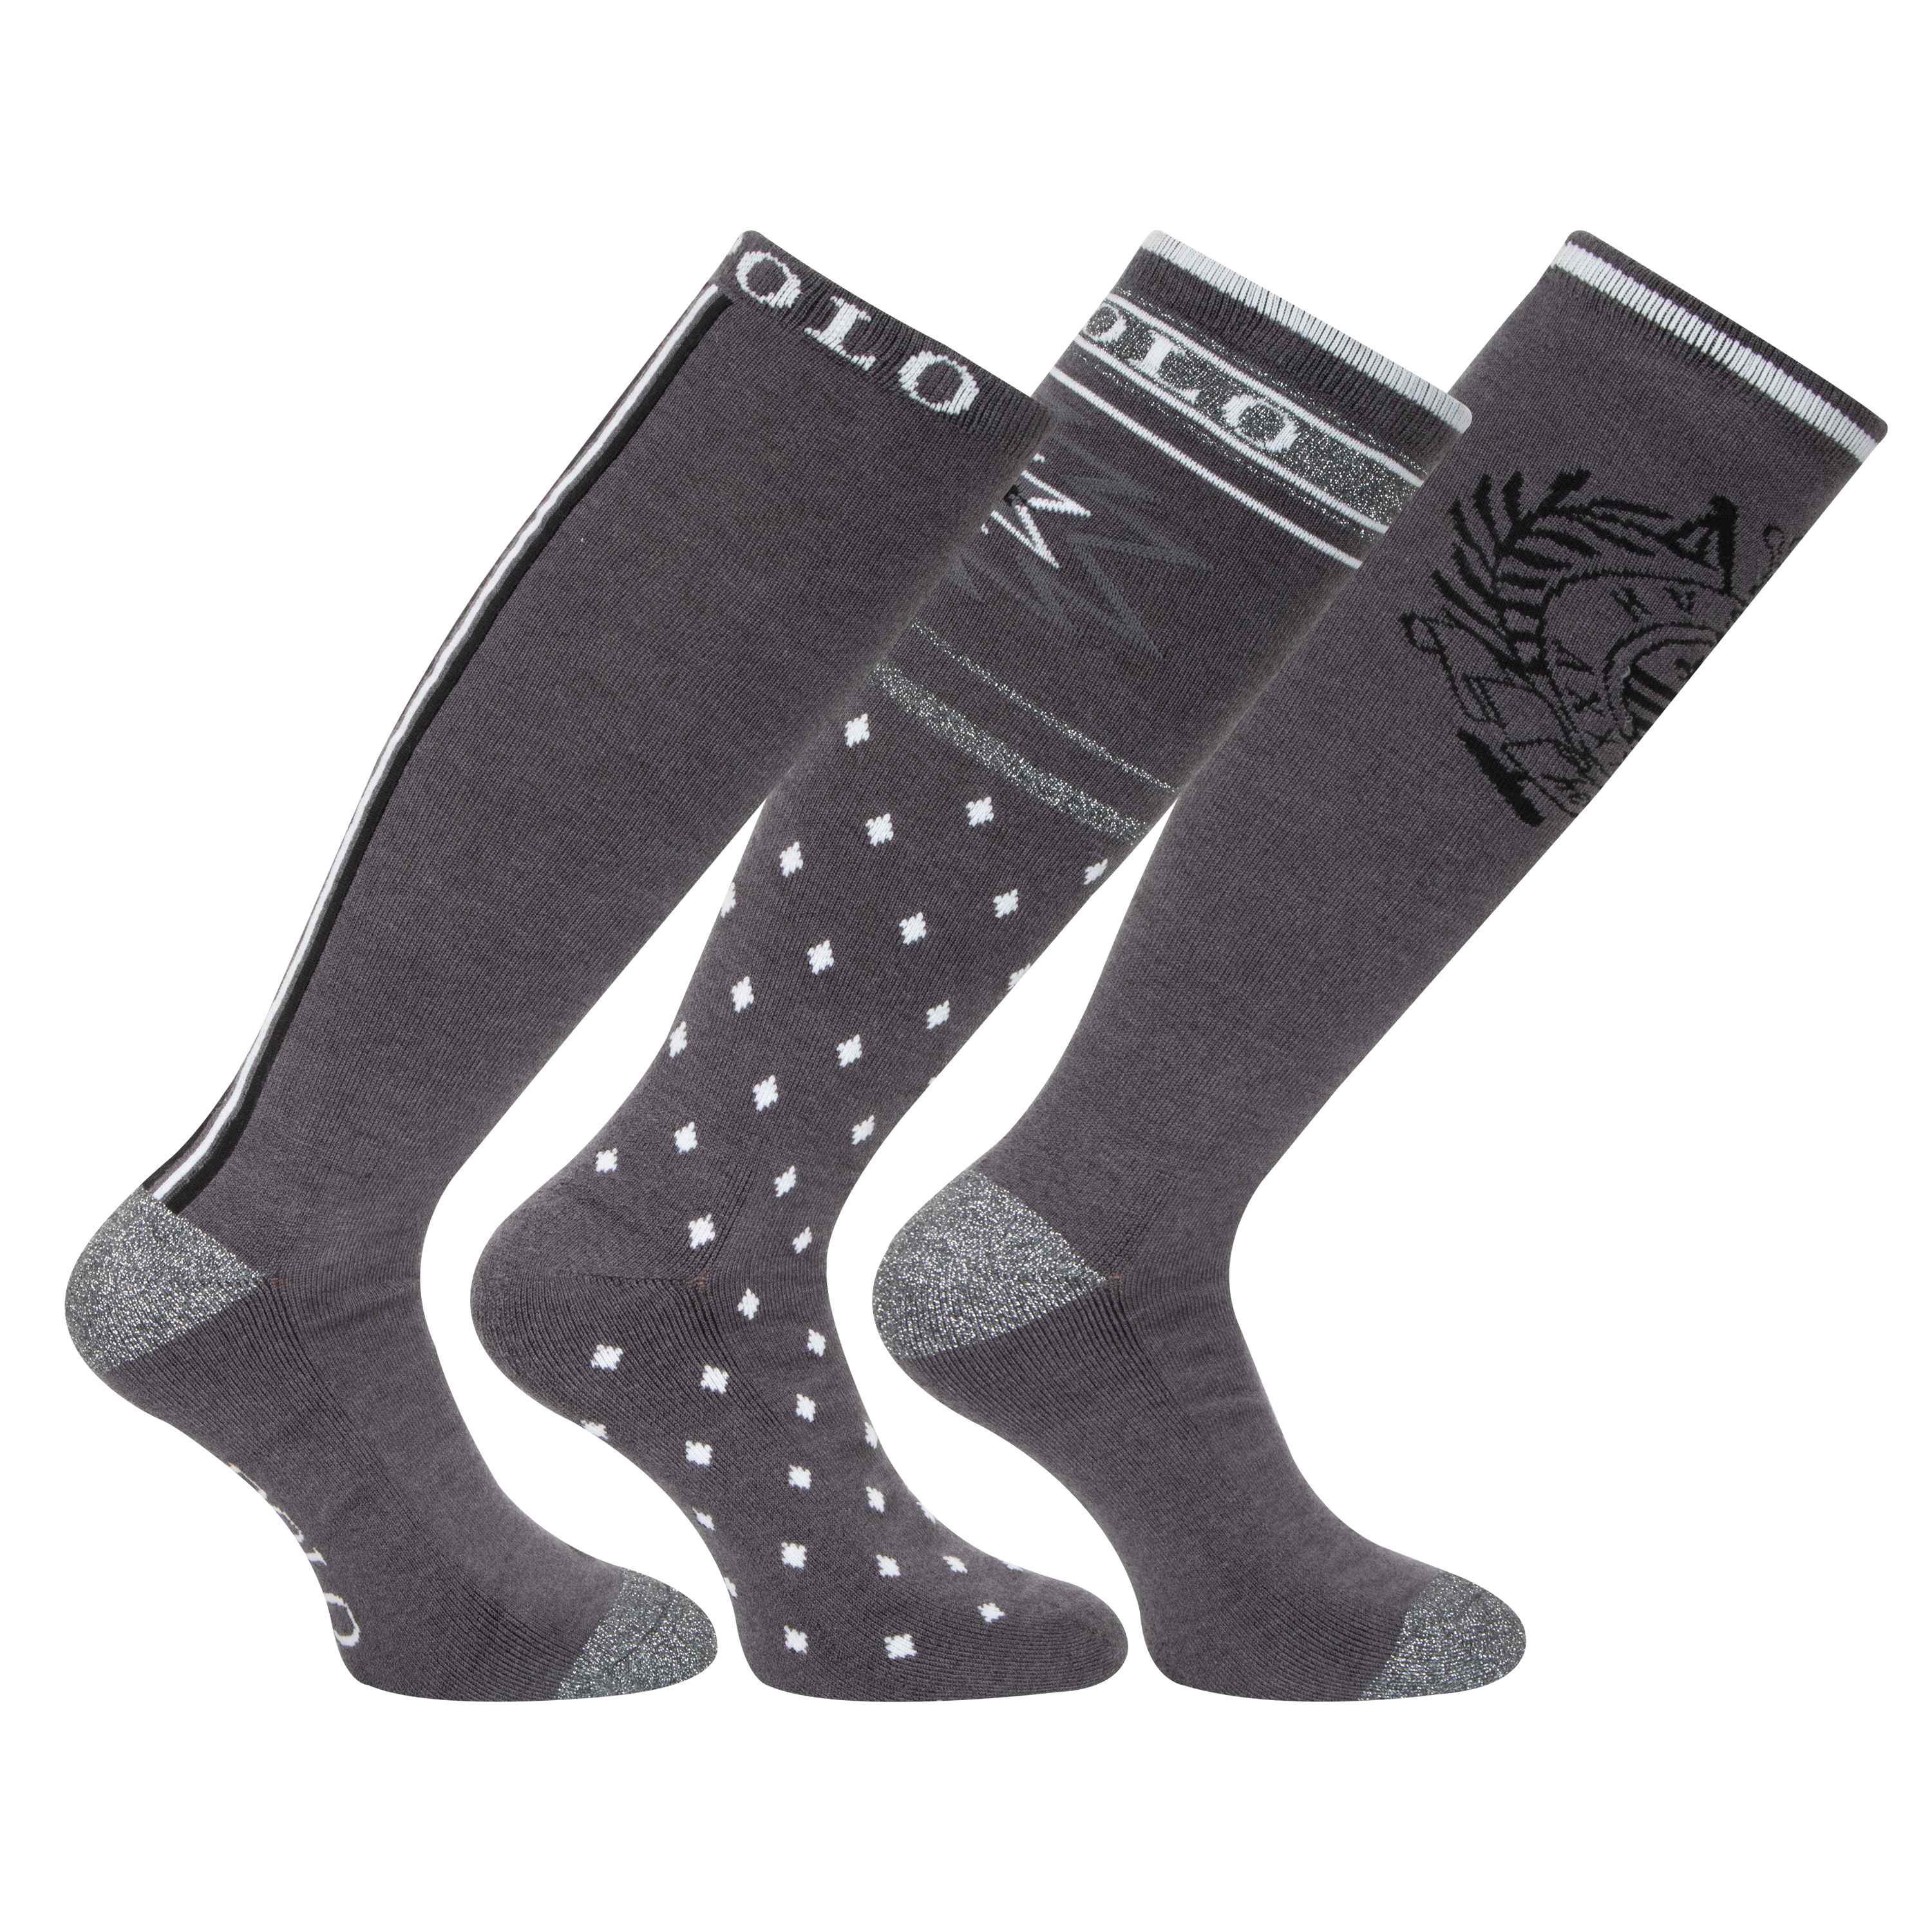 HVP 3 Pack Harper Socks